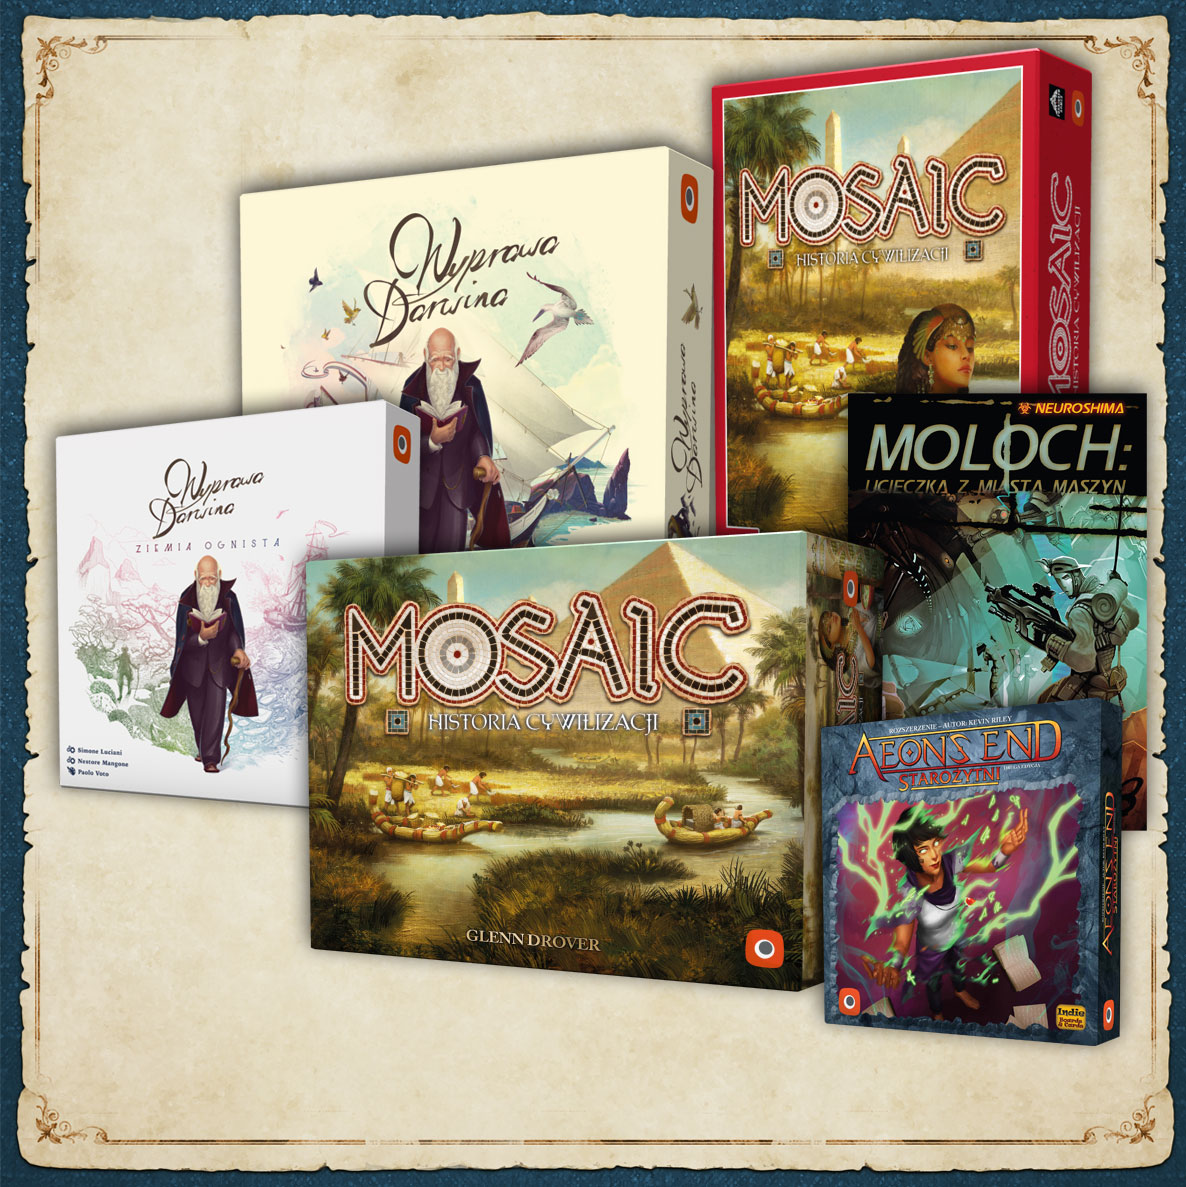 Wyprawa Darwina, Mosaic, Moloch, Starożytni: przedsprzedaże czerwca w Portal Games